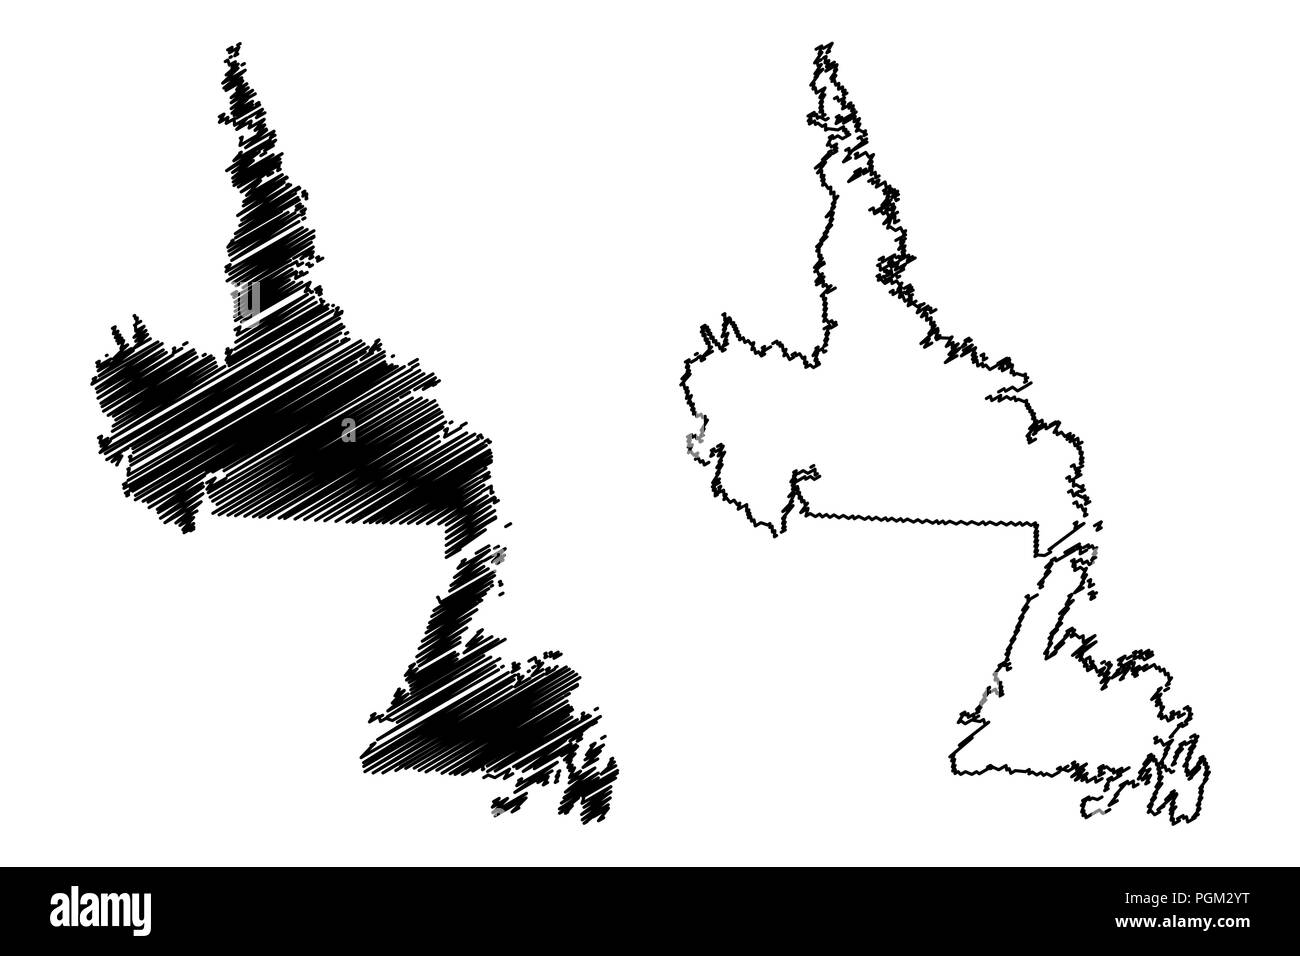 Neufundland und Labrador (Provinzen und Territorien Kanadas) Karte Vektor-illustration, kritzeln Skizze Neufundland und Labrador Karte Stock Vektor